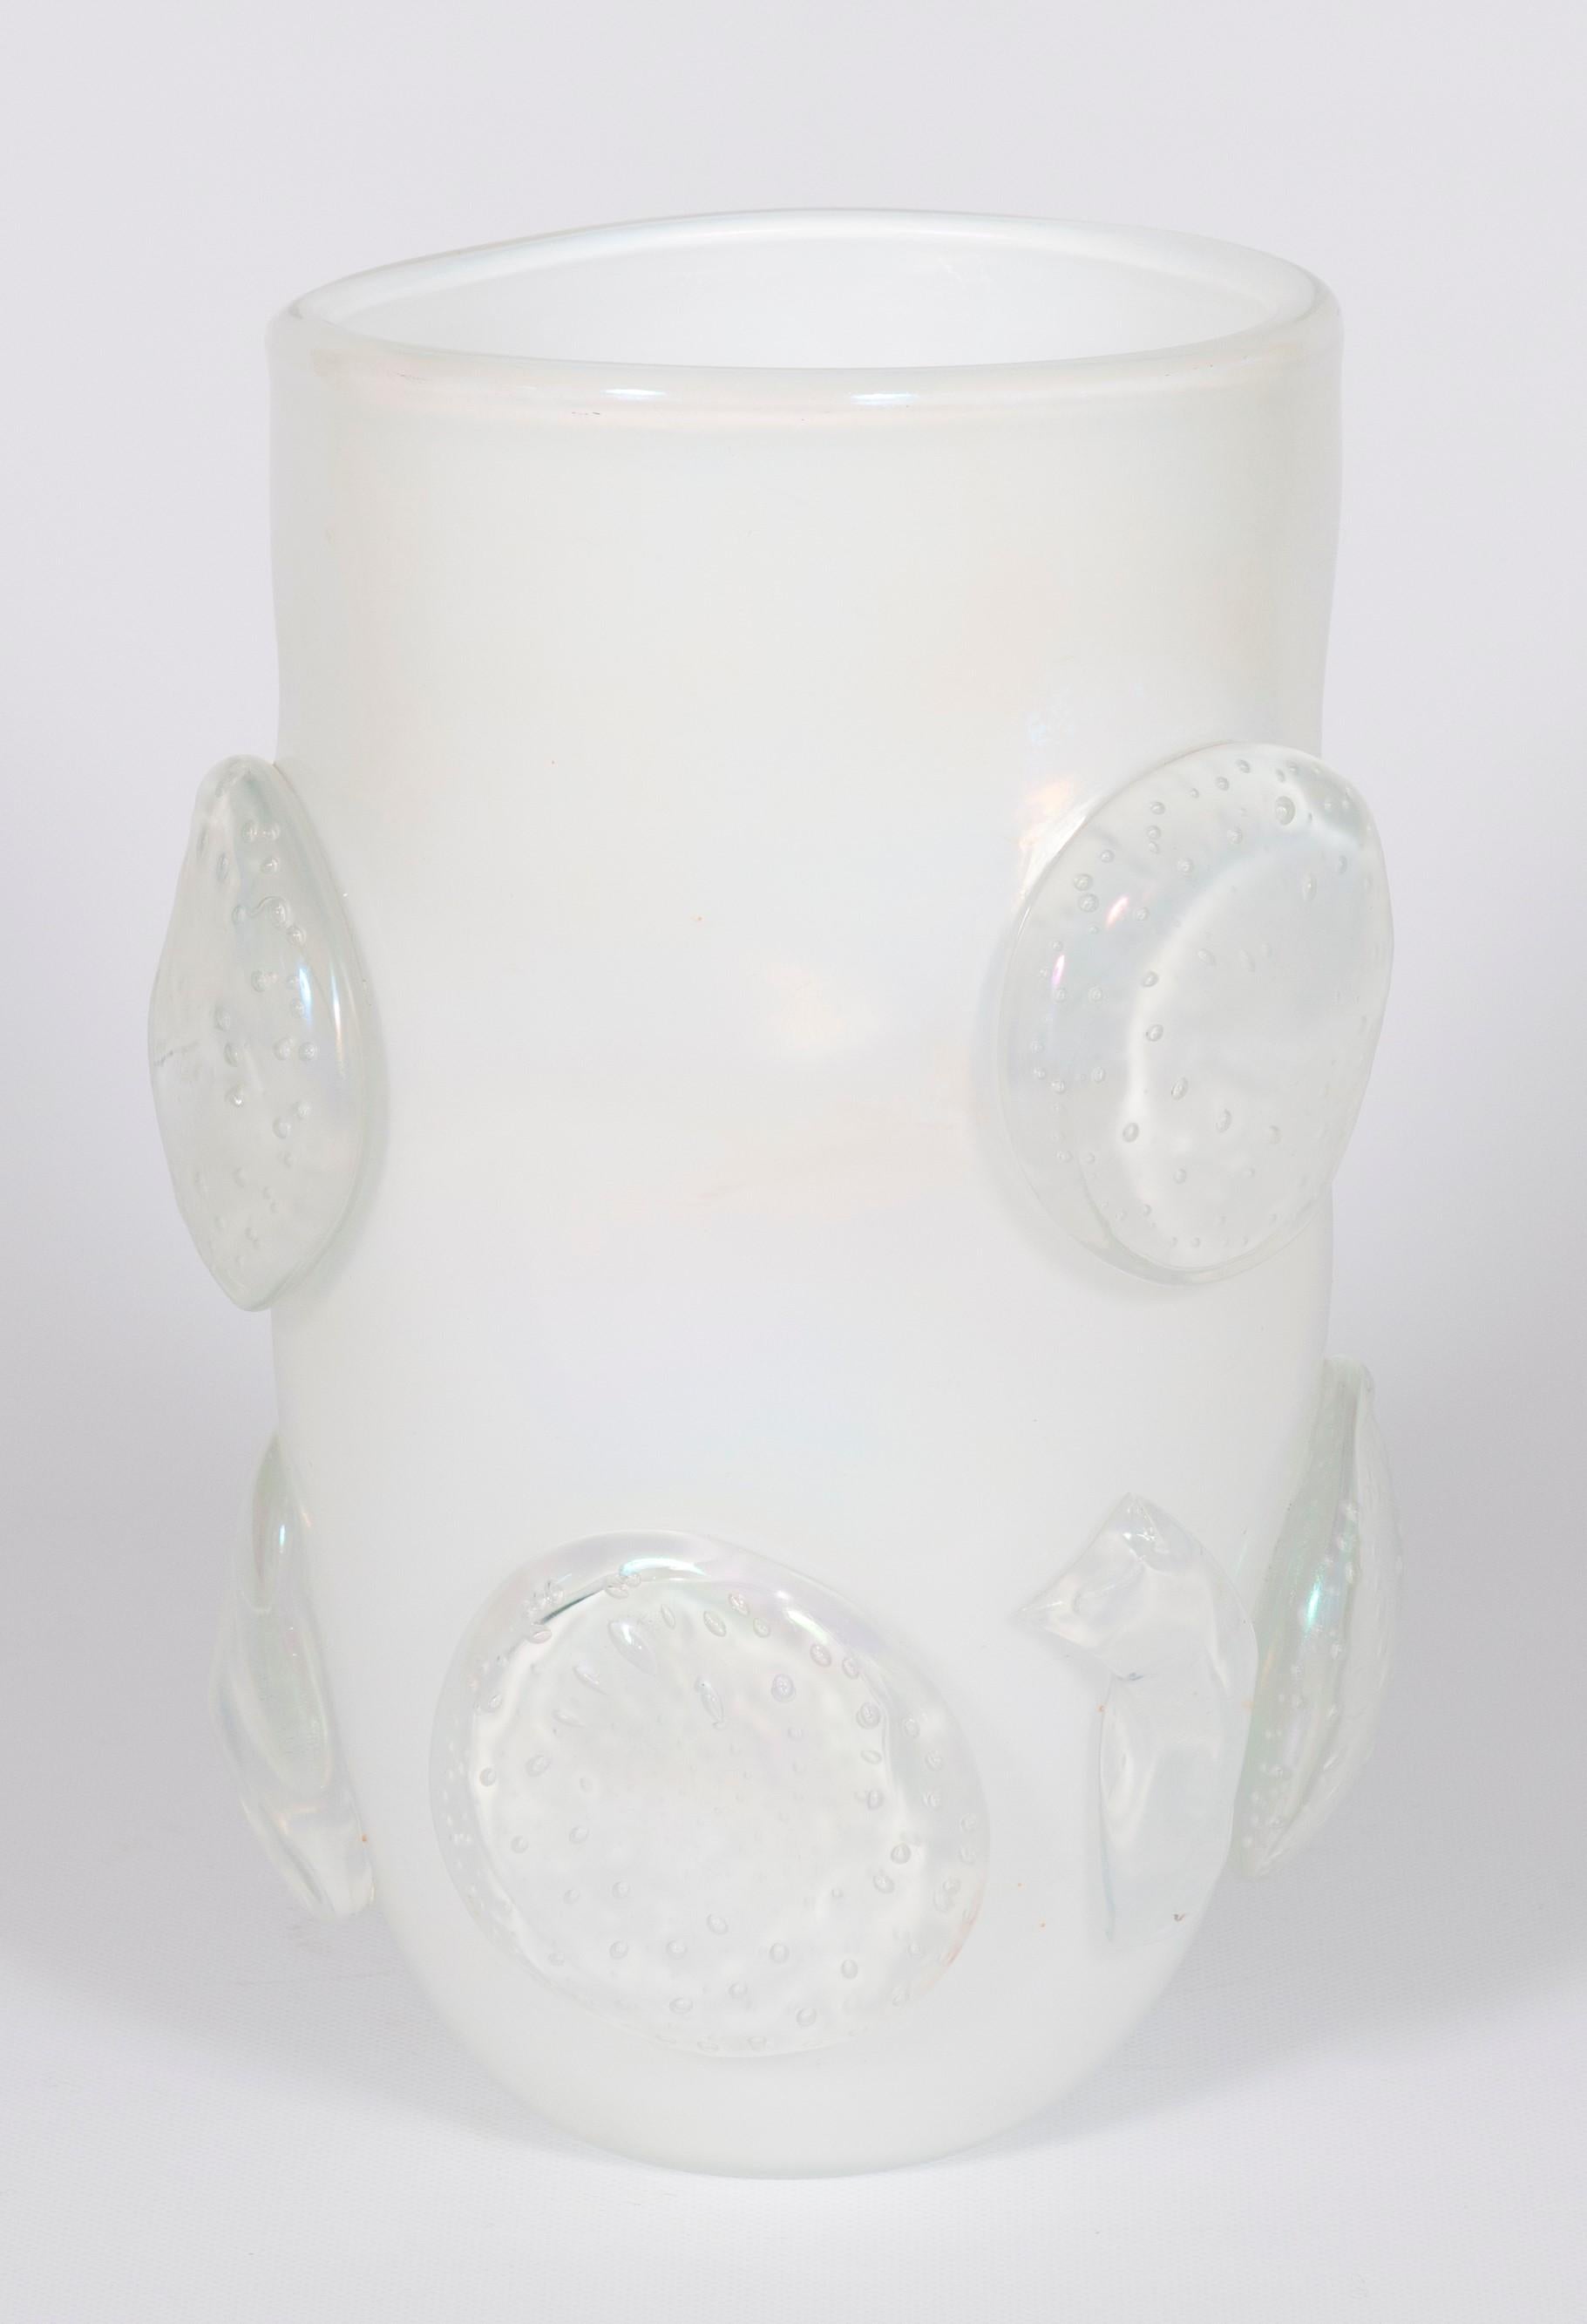 Künstlerische Milchweiß-Vase mit schillerndem und schillerndem Muranoglas und Paste, von Romano Don, Italien, 1990er Jahre.
Diese künstlerische Vase, die in den 1990er Jahren vollständig aus mundgeblasenem Muranoglas gefertigt wurde, hat ein